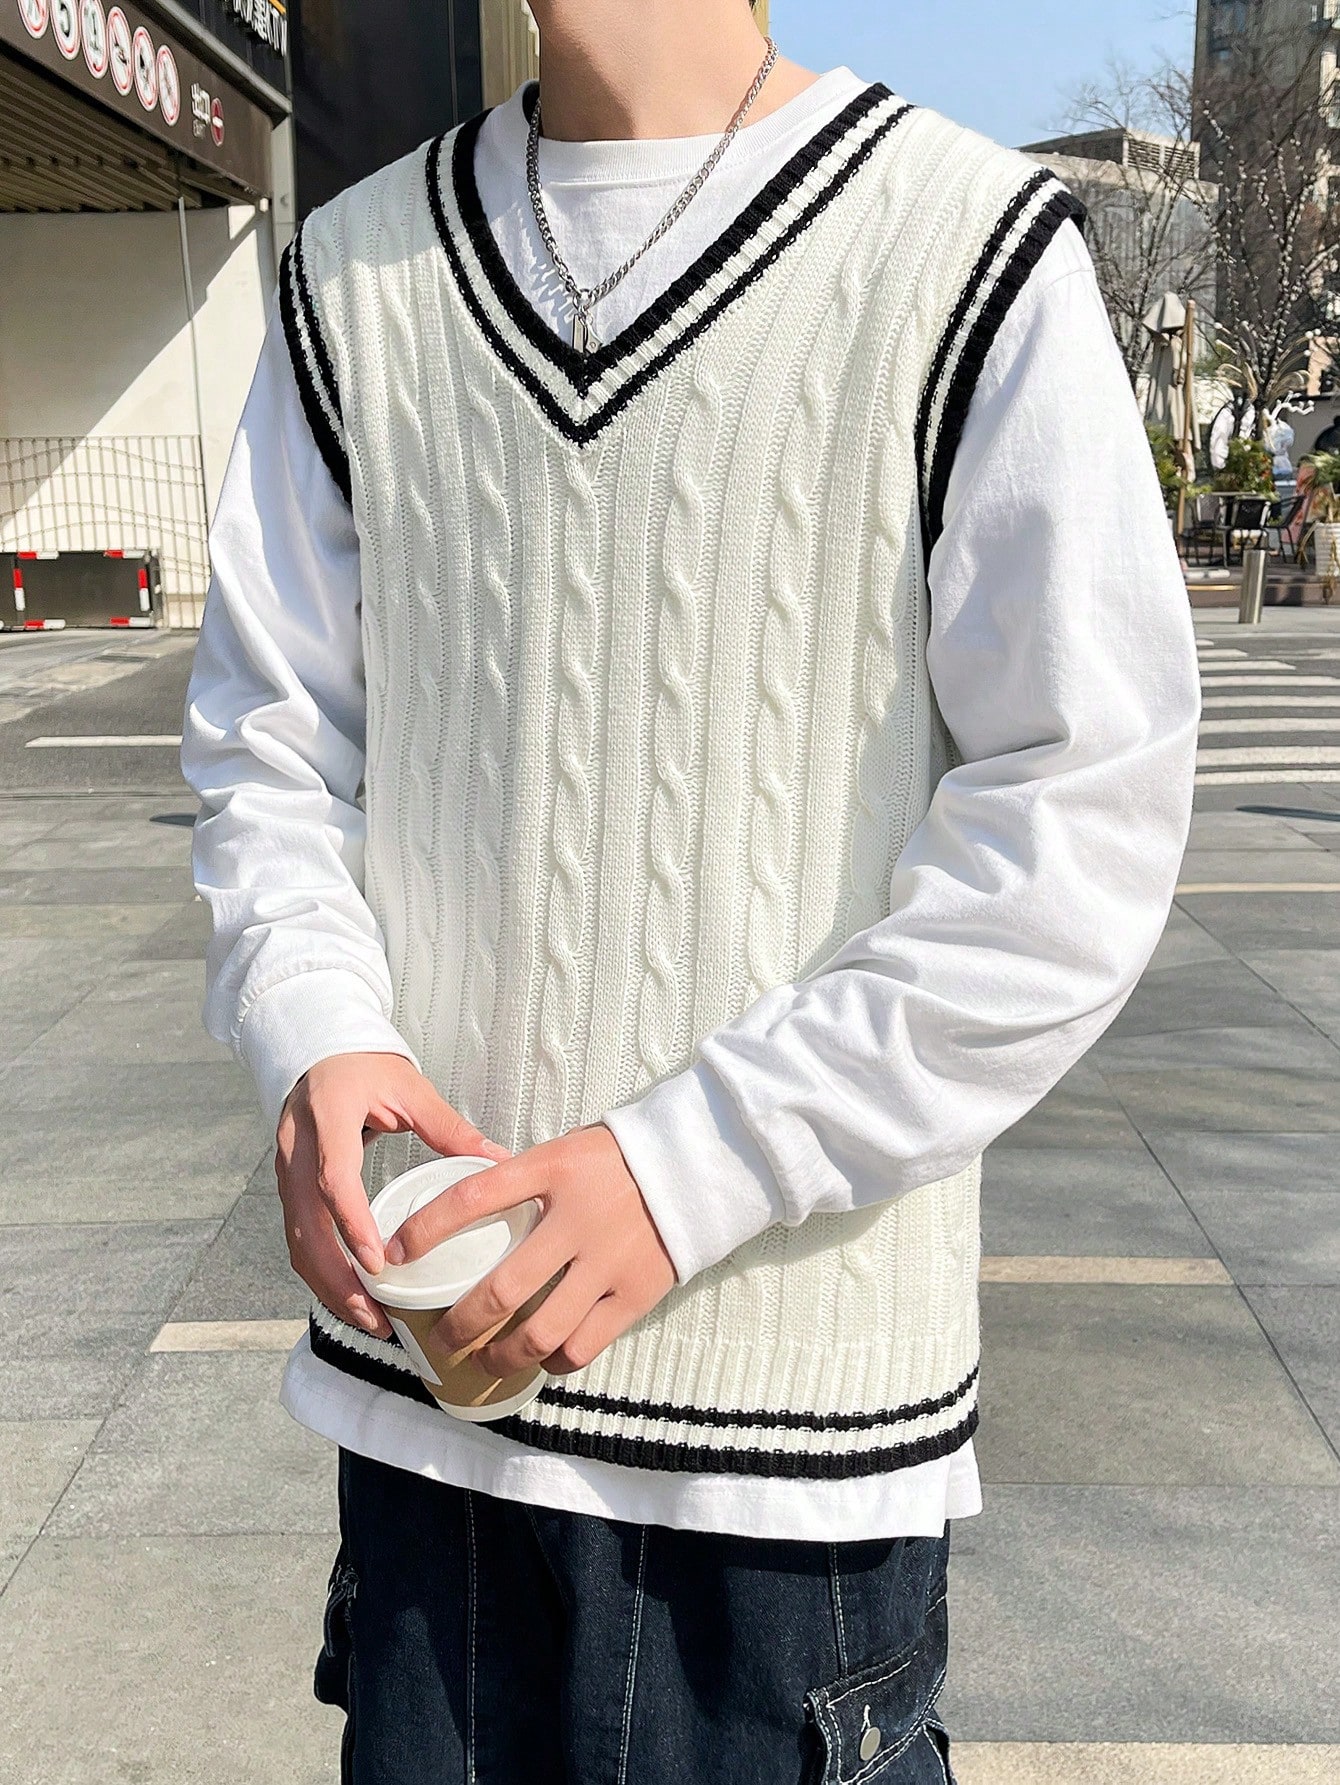 Мужской свитер в полоску с v-образным вырезом Manfinity Sporsity, белый мужской трикотажный свитер с v образным вырезом длинным рукавом